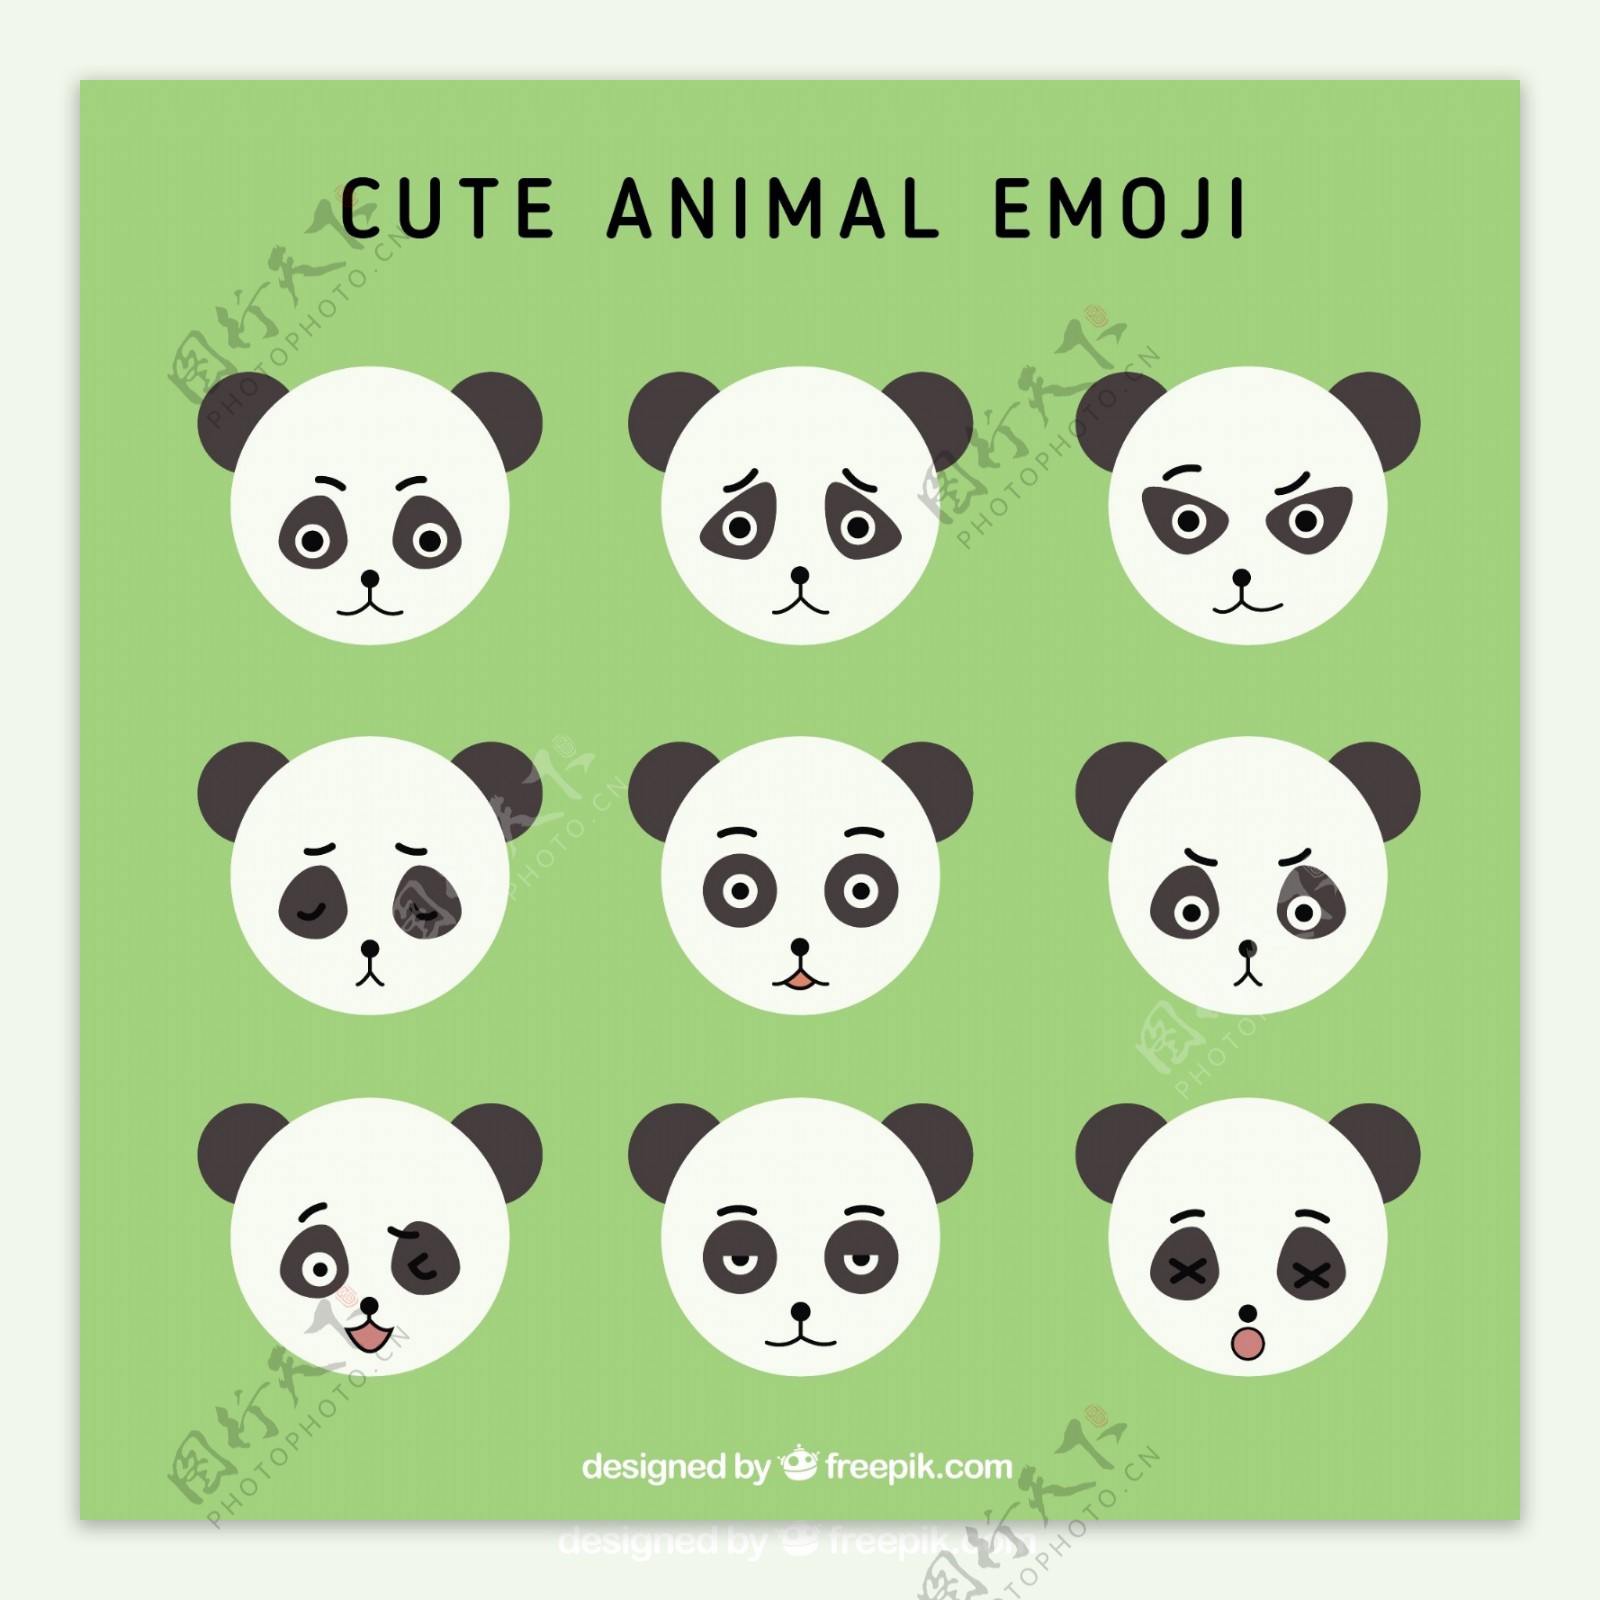 九熊猫表情包